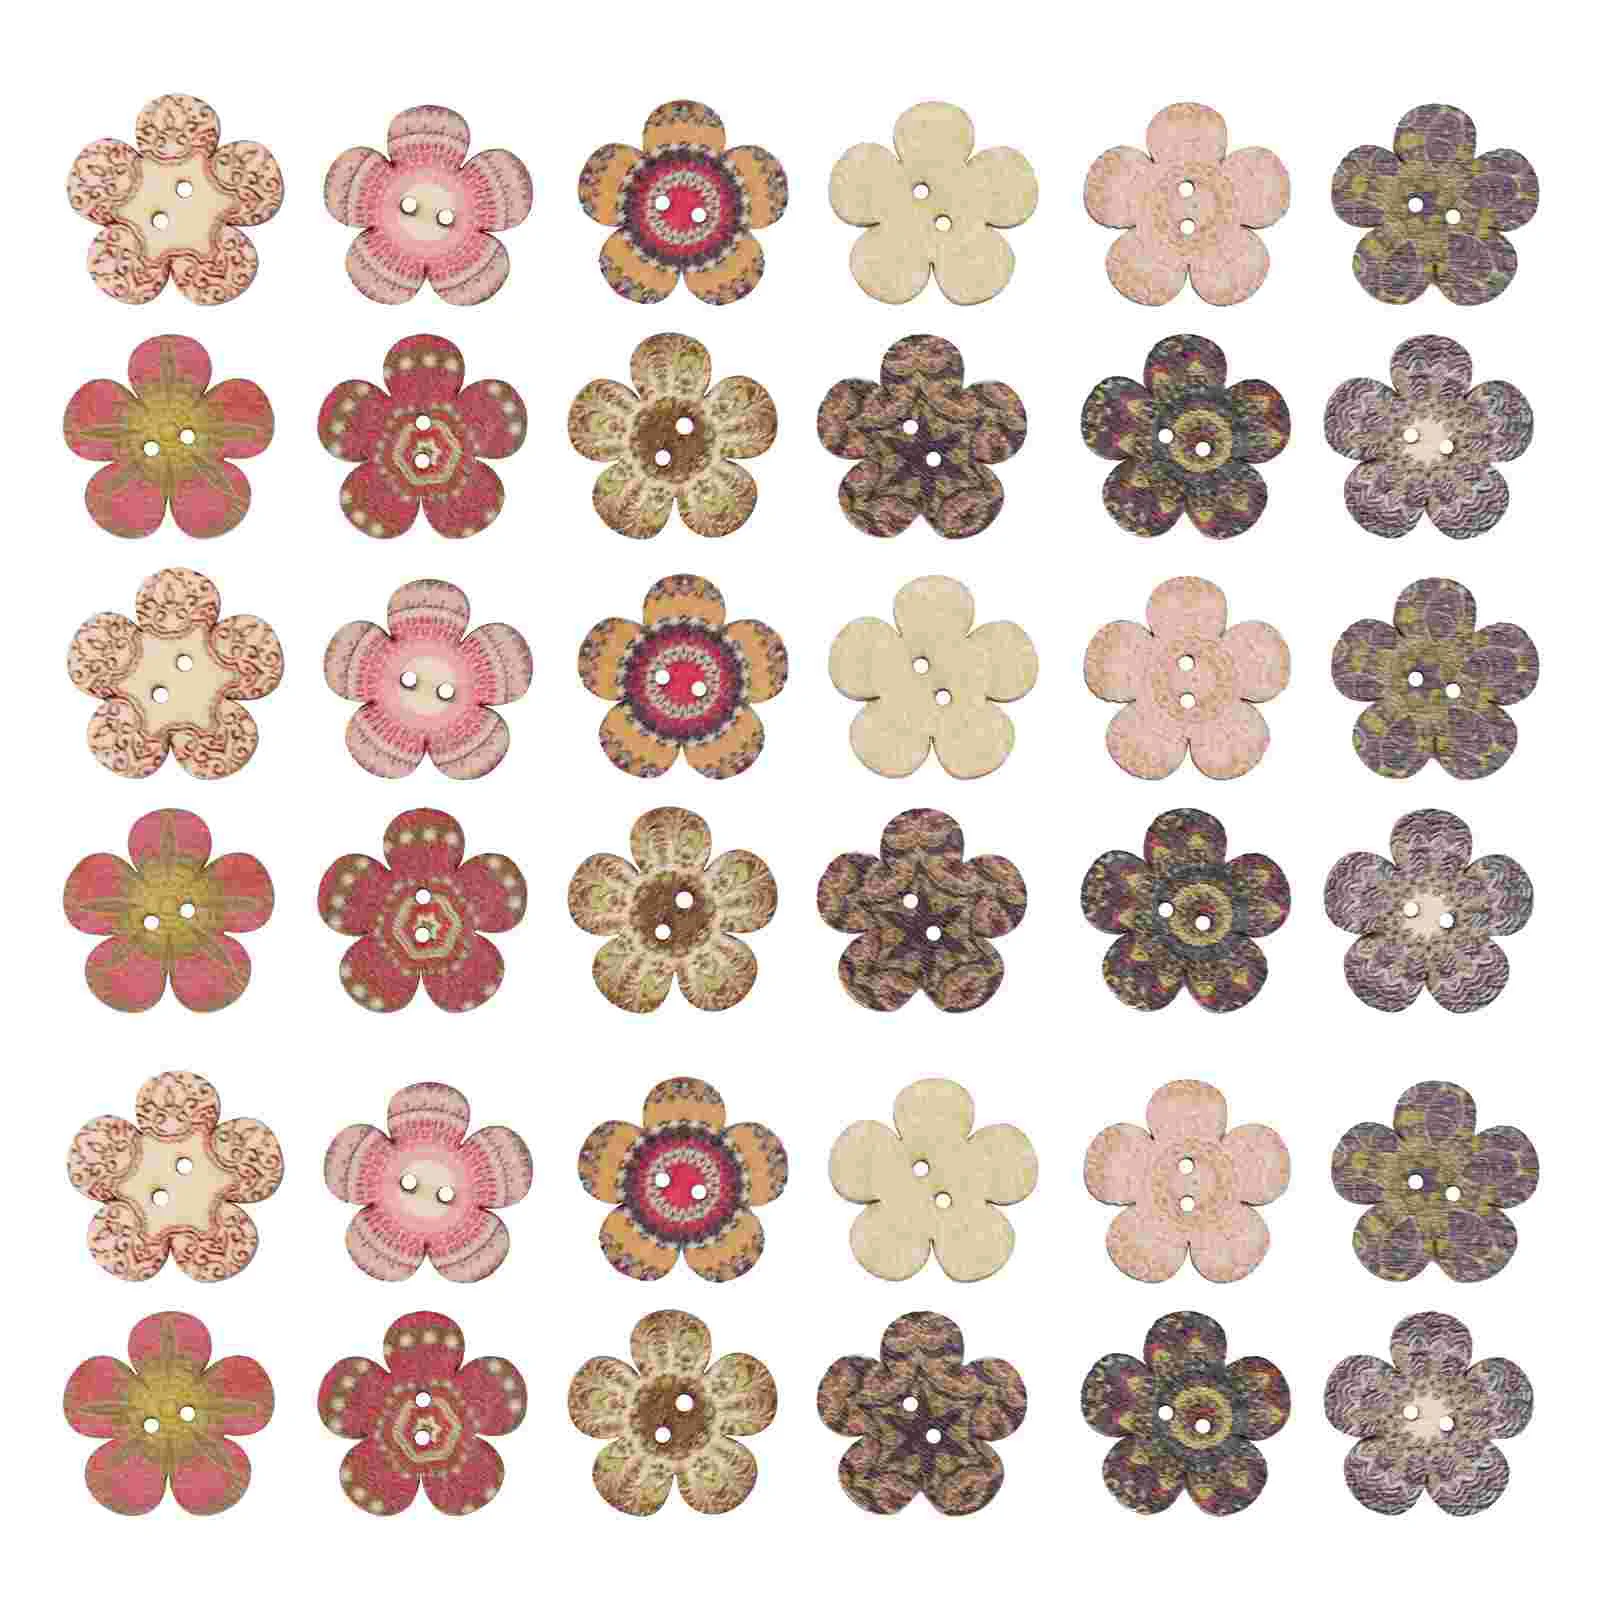 

100 Pcs Vintage Wood Button Flower Wooden Buttons Decor Clothes DIY Decorative Woodsy Crafts Bouton